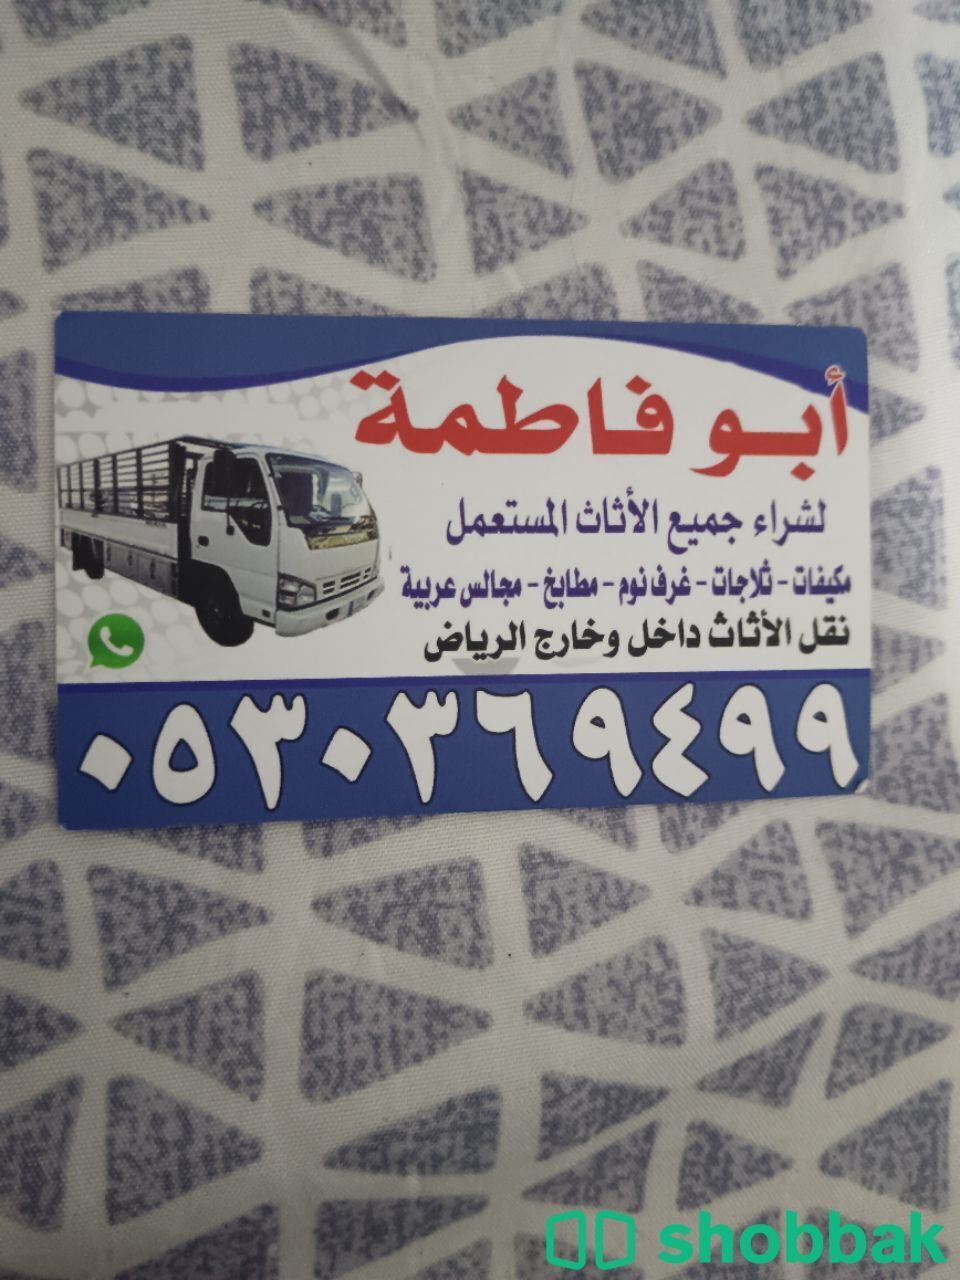 شراء أثاث مستعمل حي الندى 0530369499  Shobbak Saudi Arabia